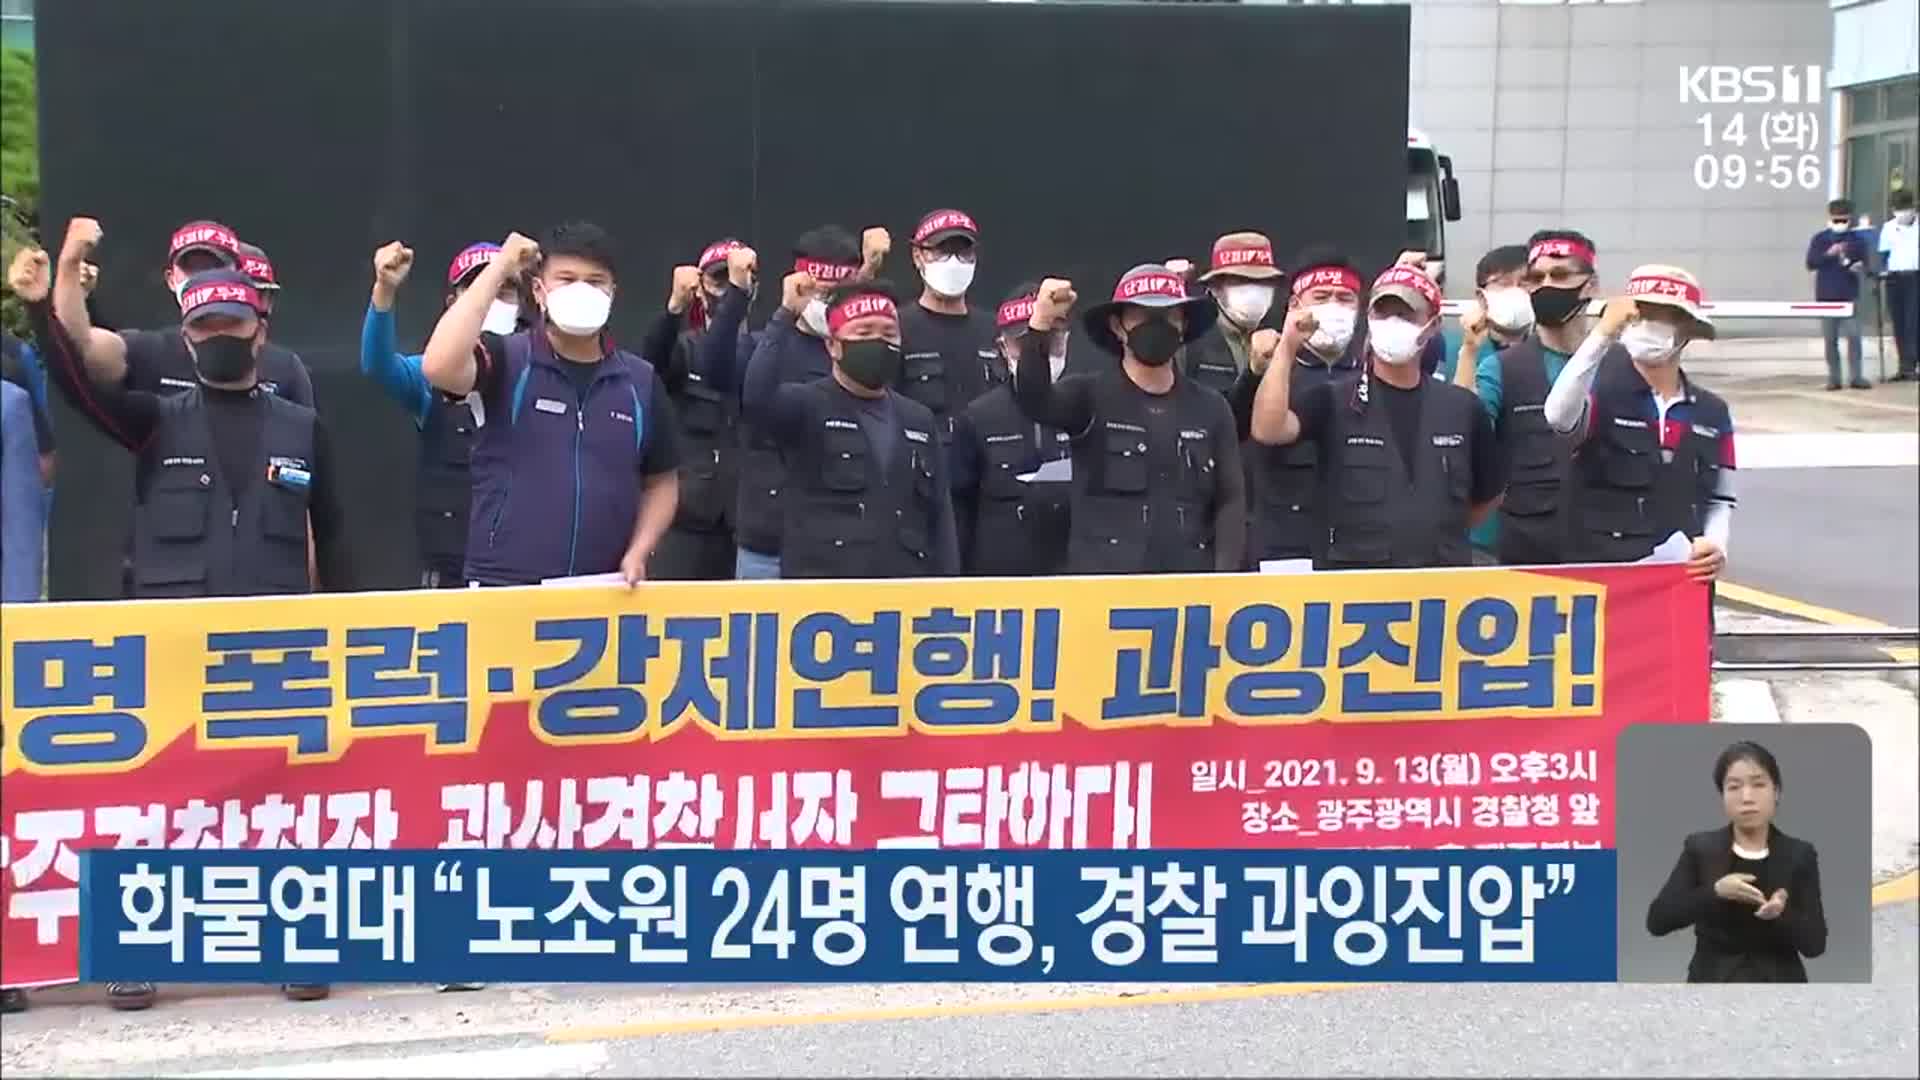 화물연대 “노조원 24명 연행, 경찰 과잉진압”